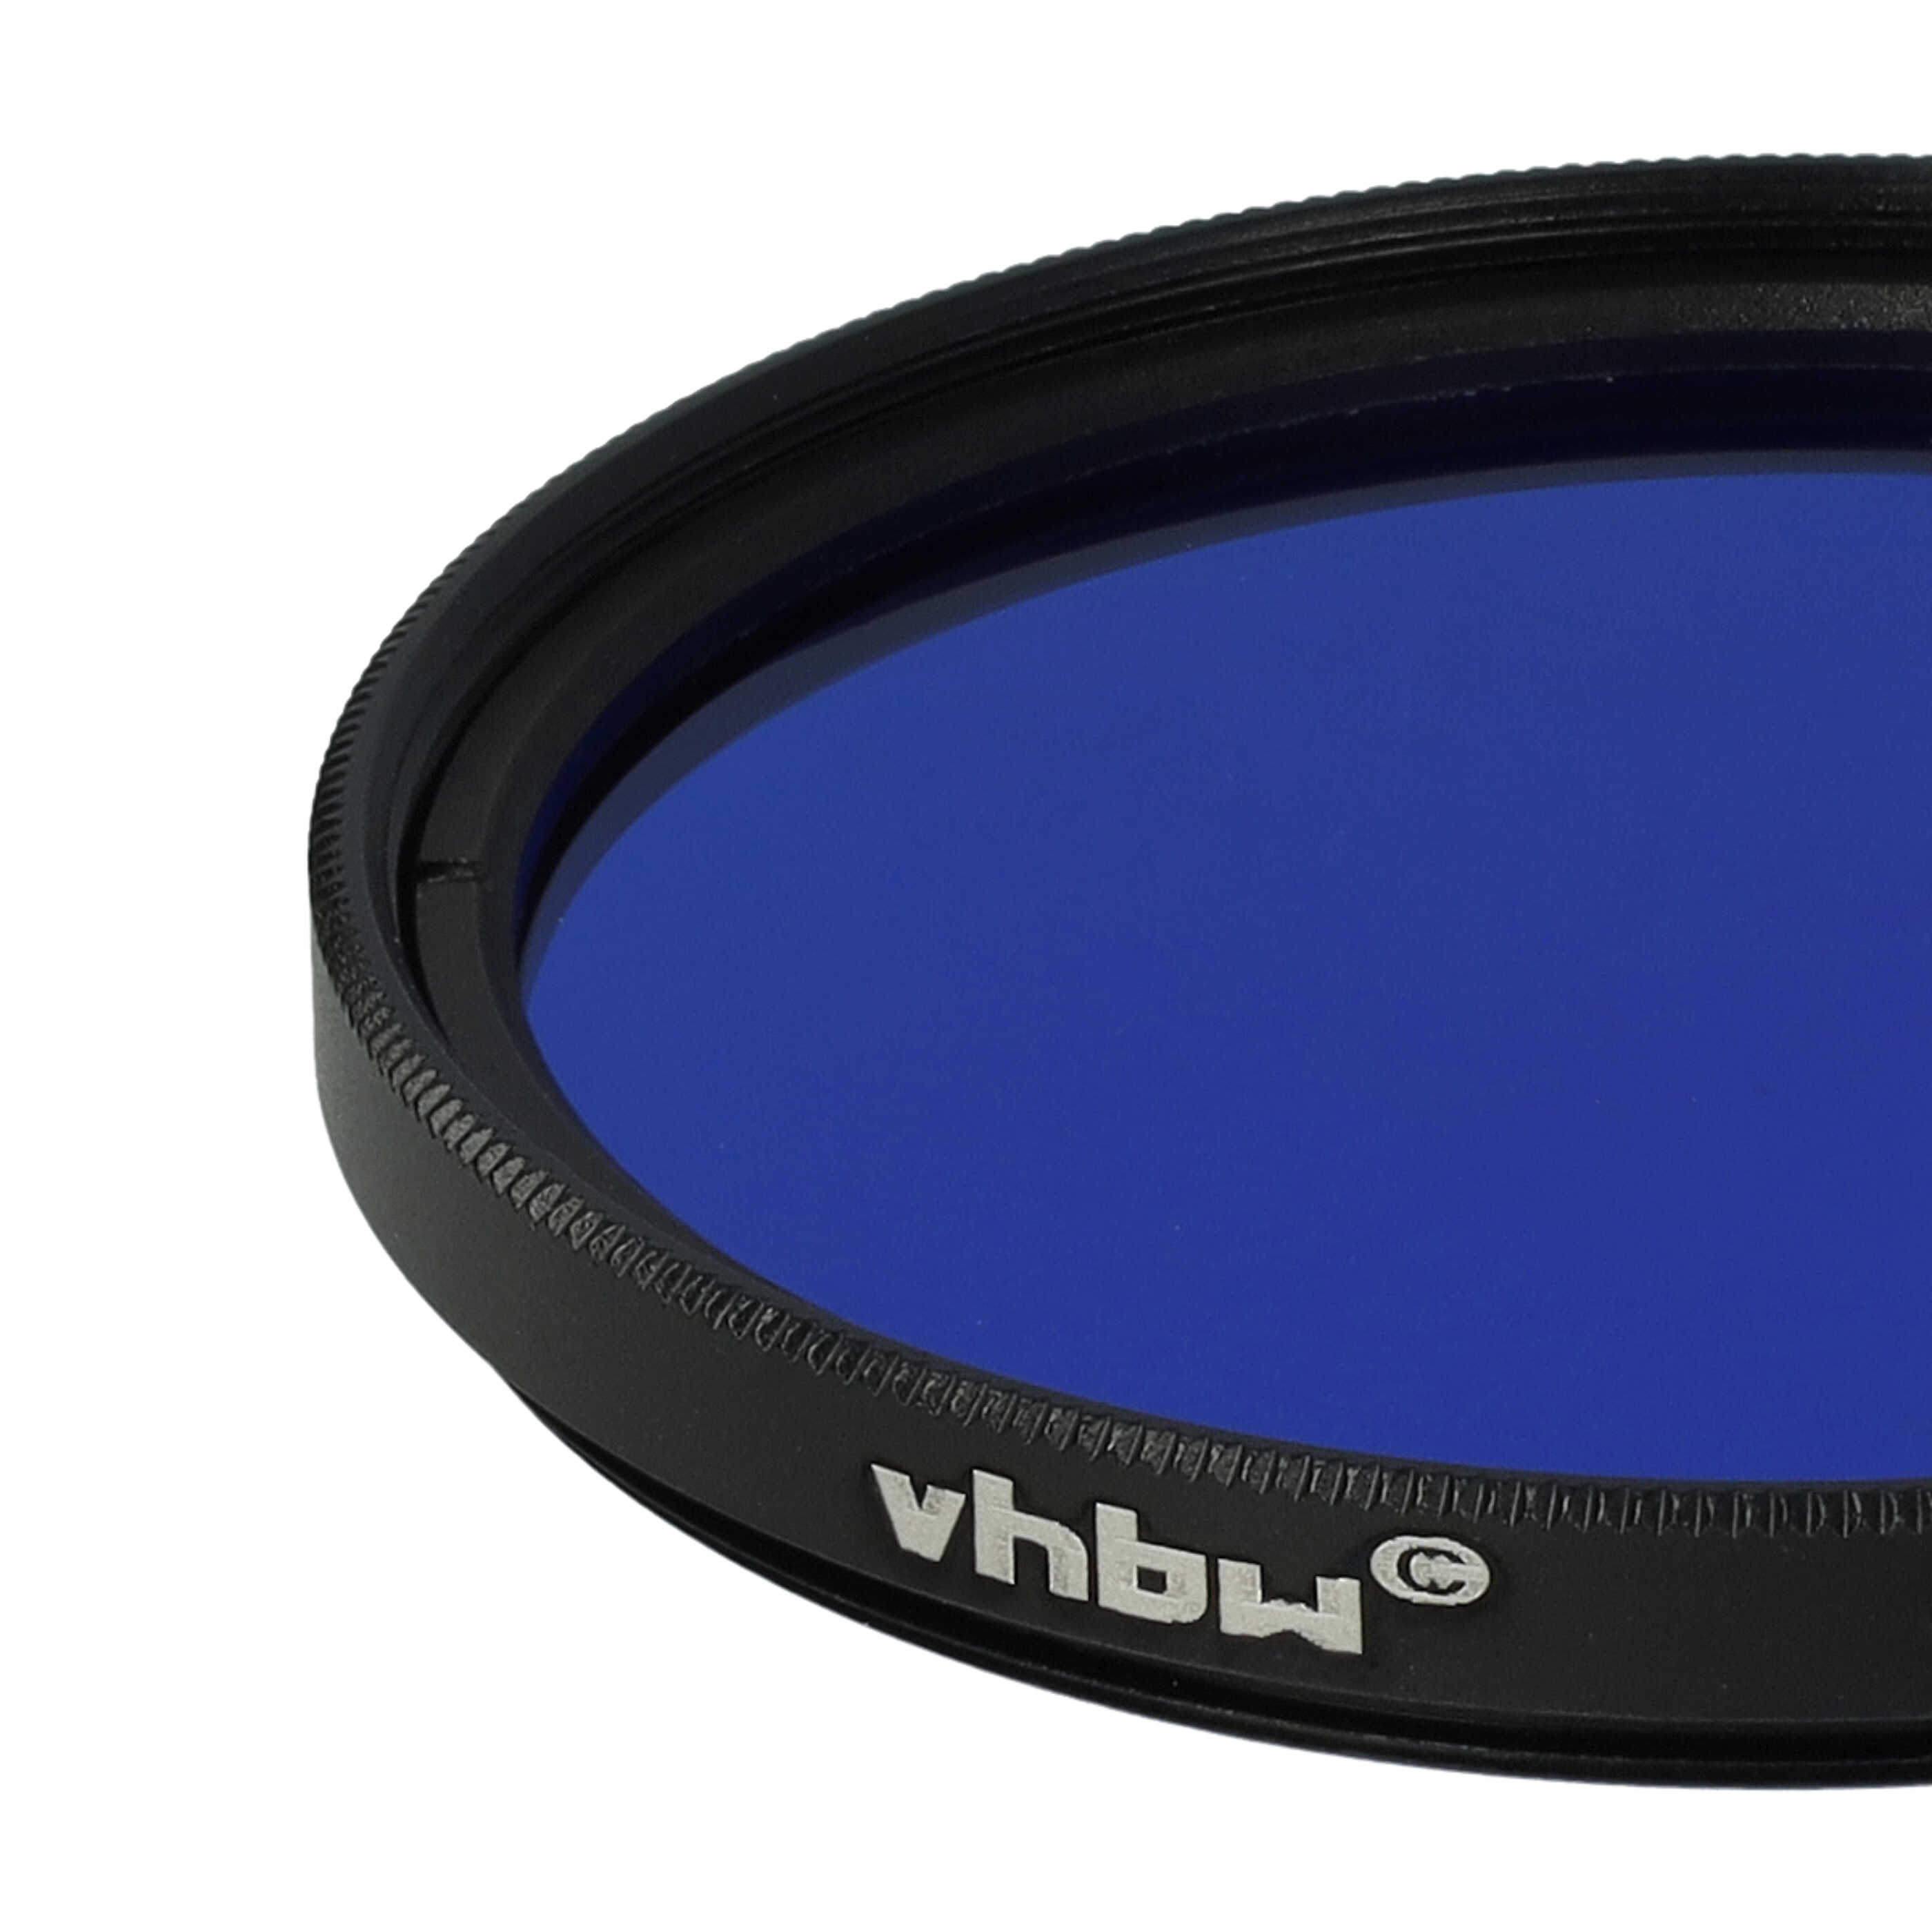 Filtre de couleur bleu pour objectifs d'appareils photo de 49 mm - Filtre bleu